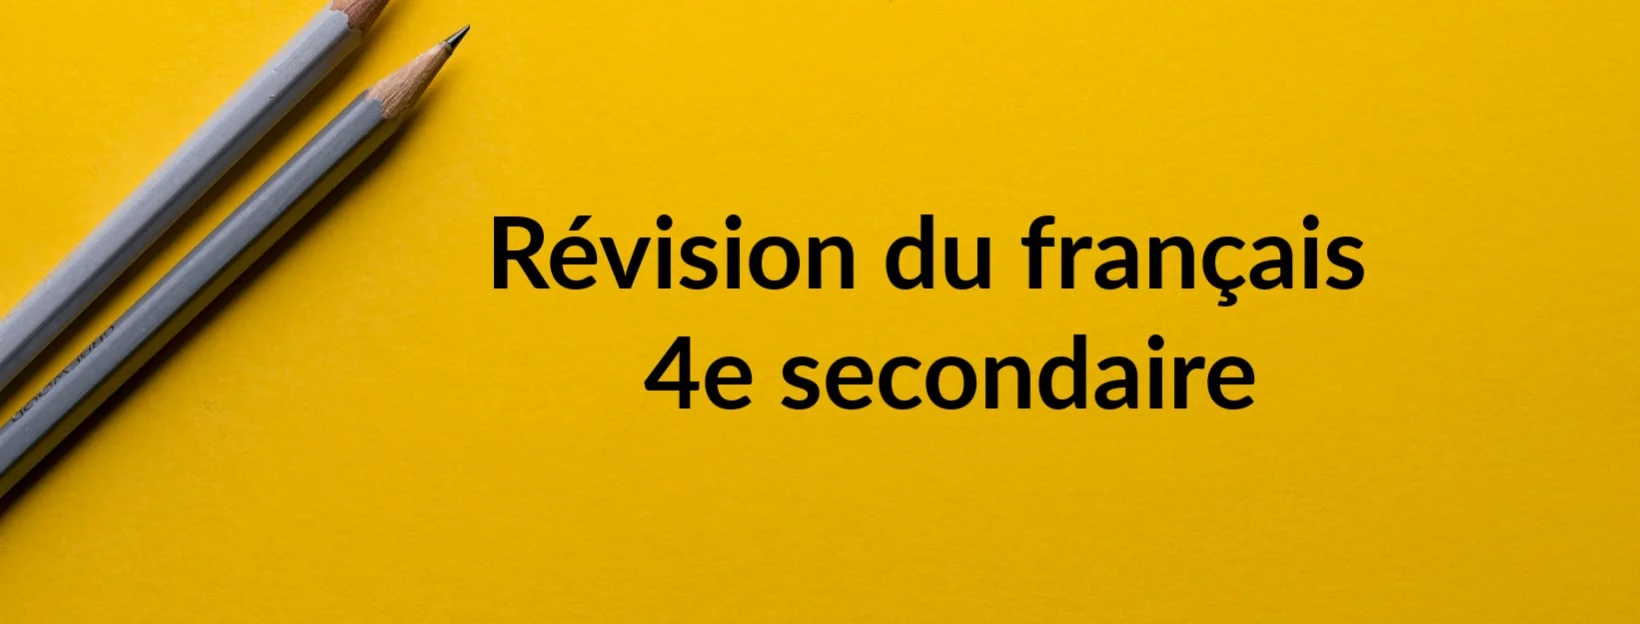 Révision du français 4e secondaire SOSprof tutorat scolaire